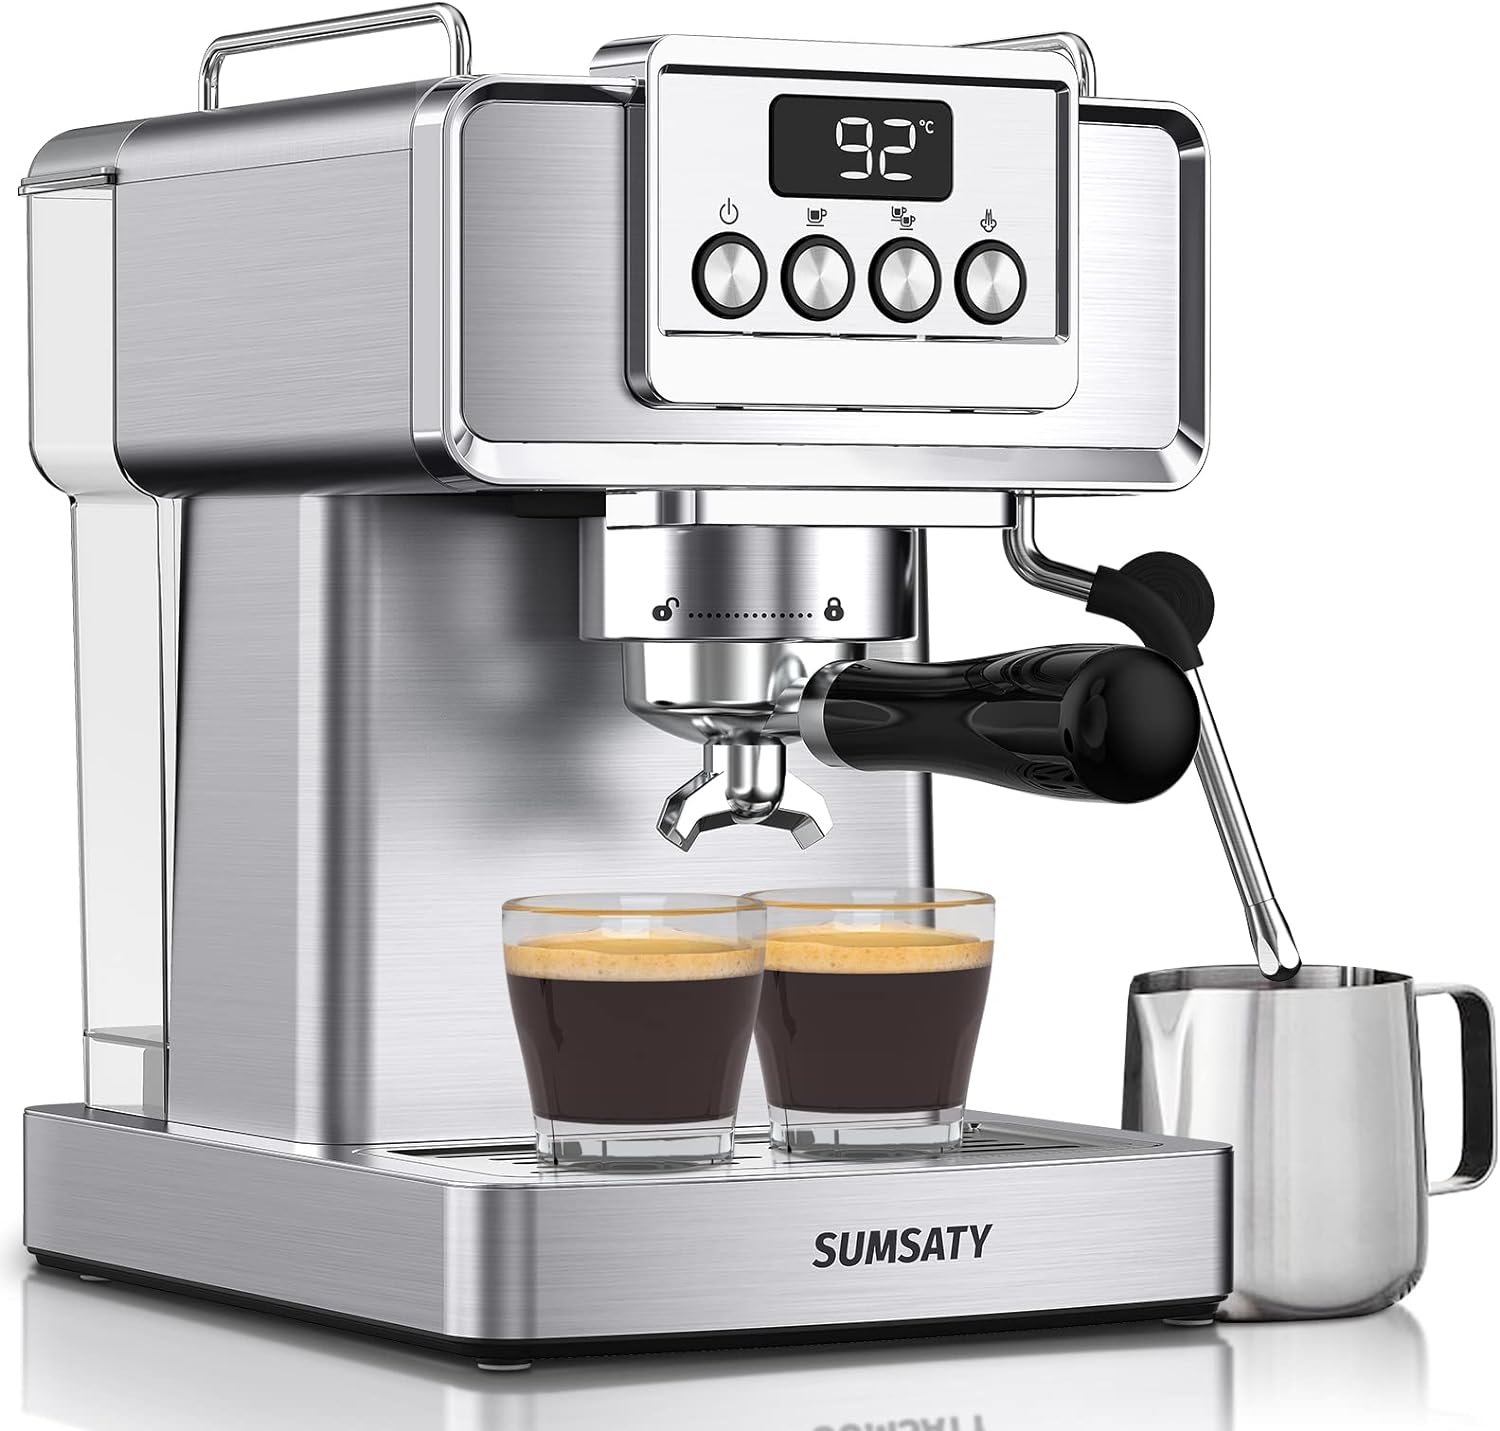 SUMSATY Espresso Machine Review